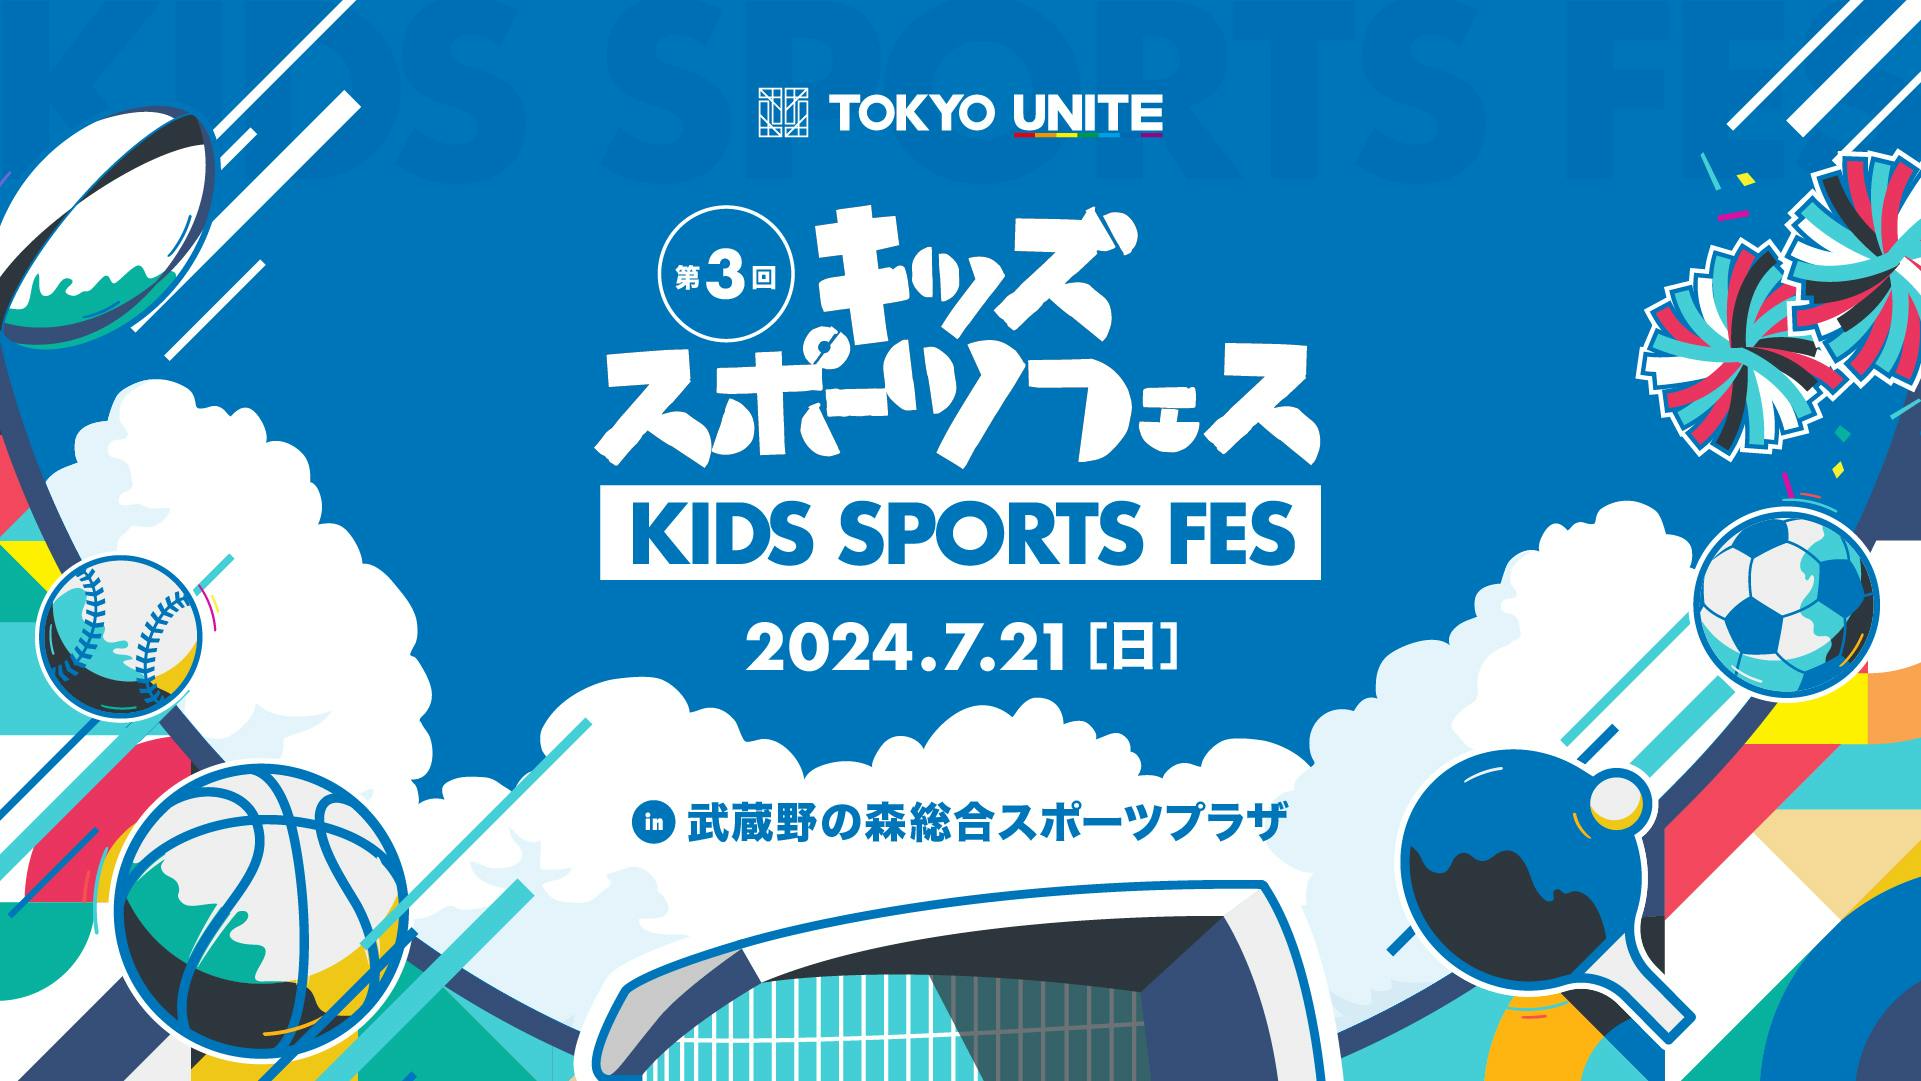 小学生向けマルチスポーツ体験イベントを７月2１日に開催<br> TOKYO UNITE 第３回キッズスポーツフェス in むさプラ 